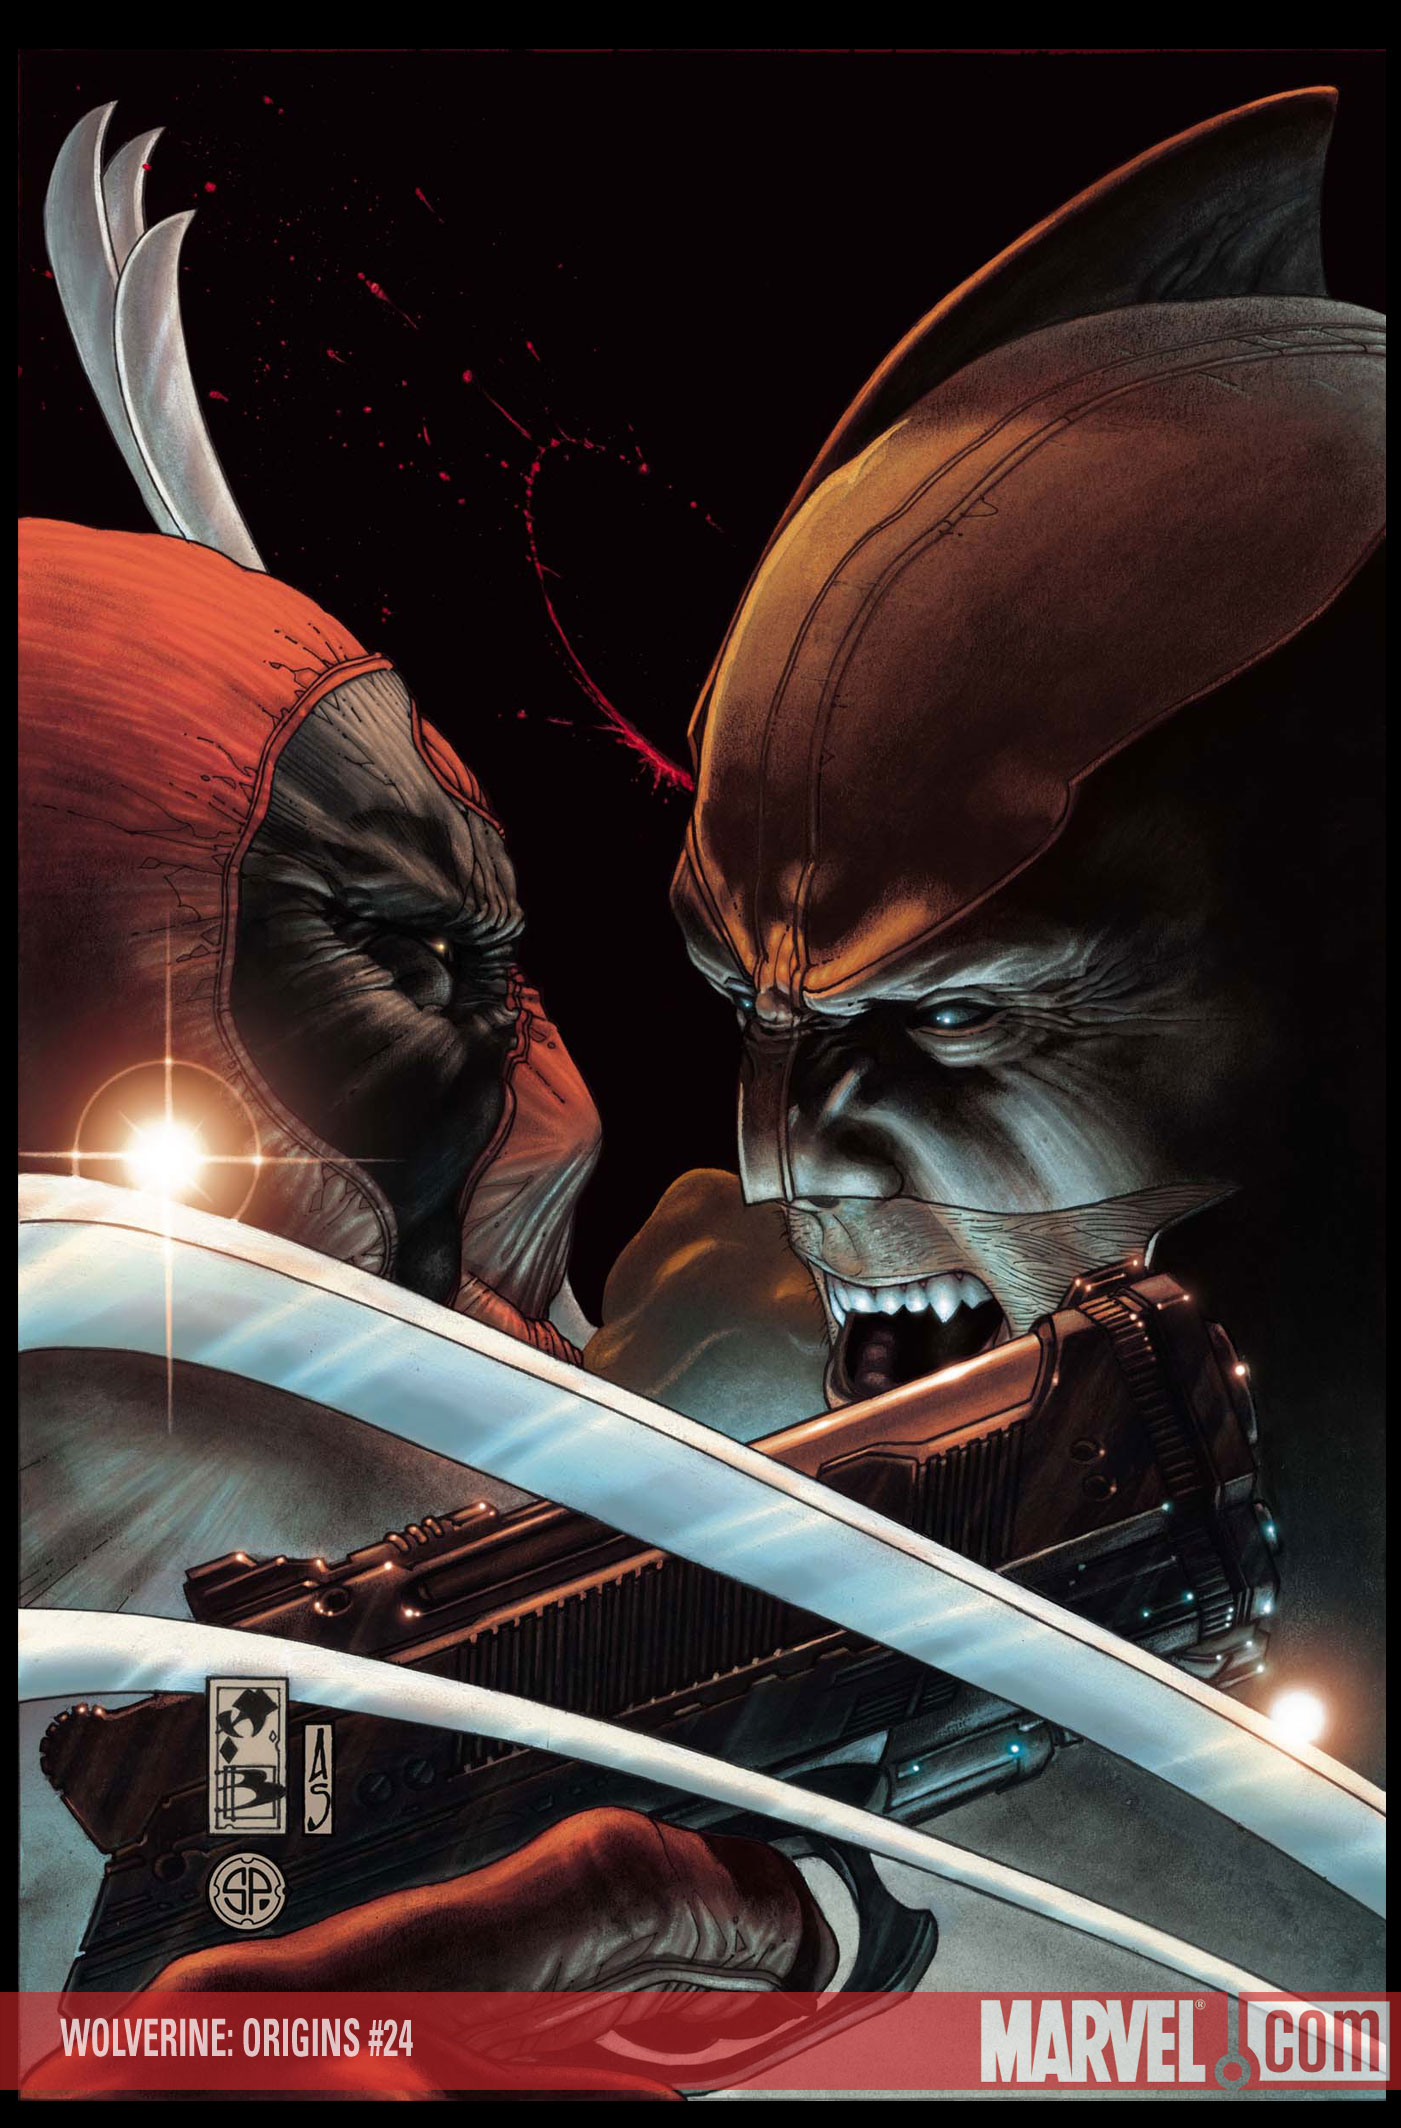 Deadpool Vs. Wolverine Backgrounds, Compatible - PC, Mobile, Gadgets| 1401x2128 px